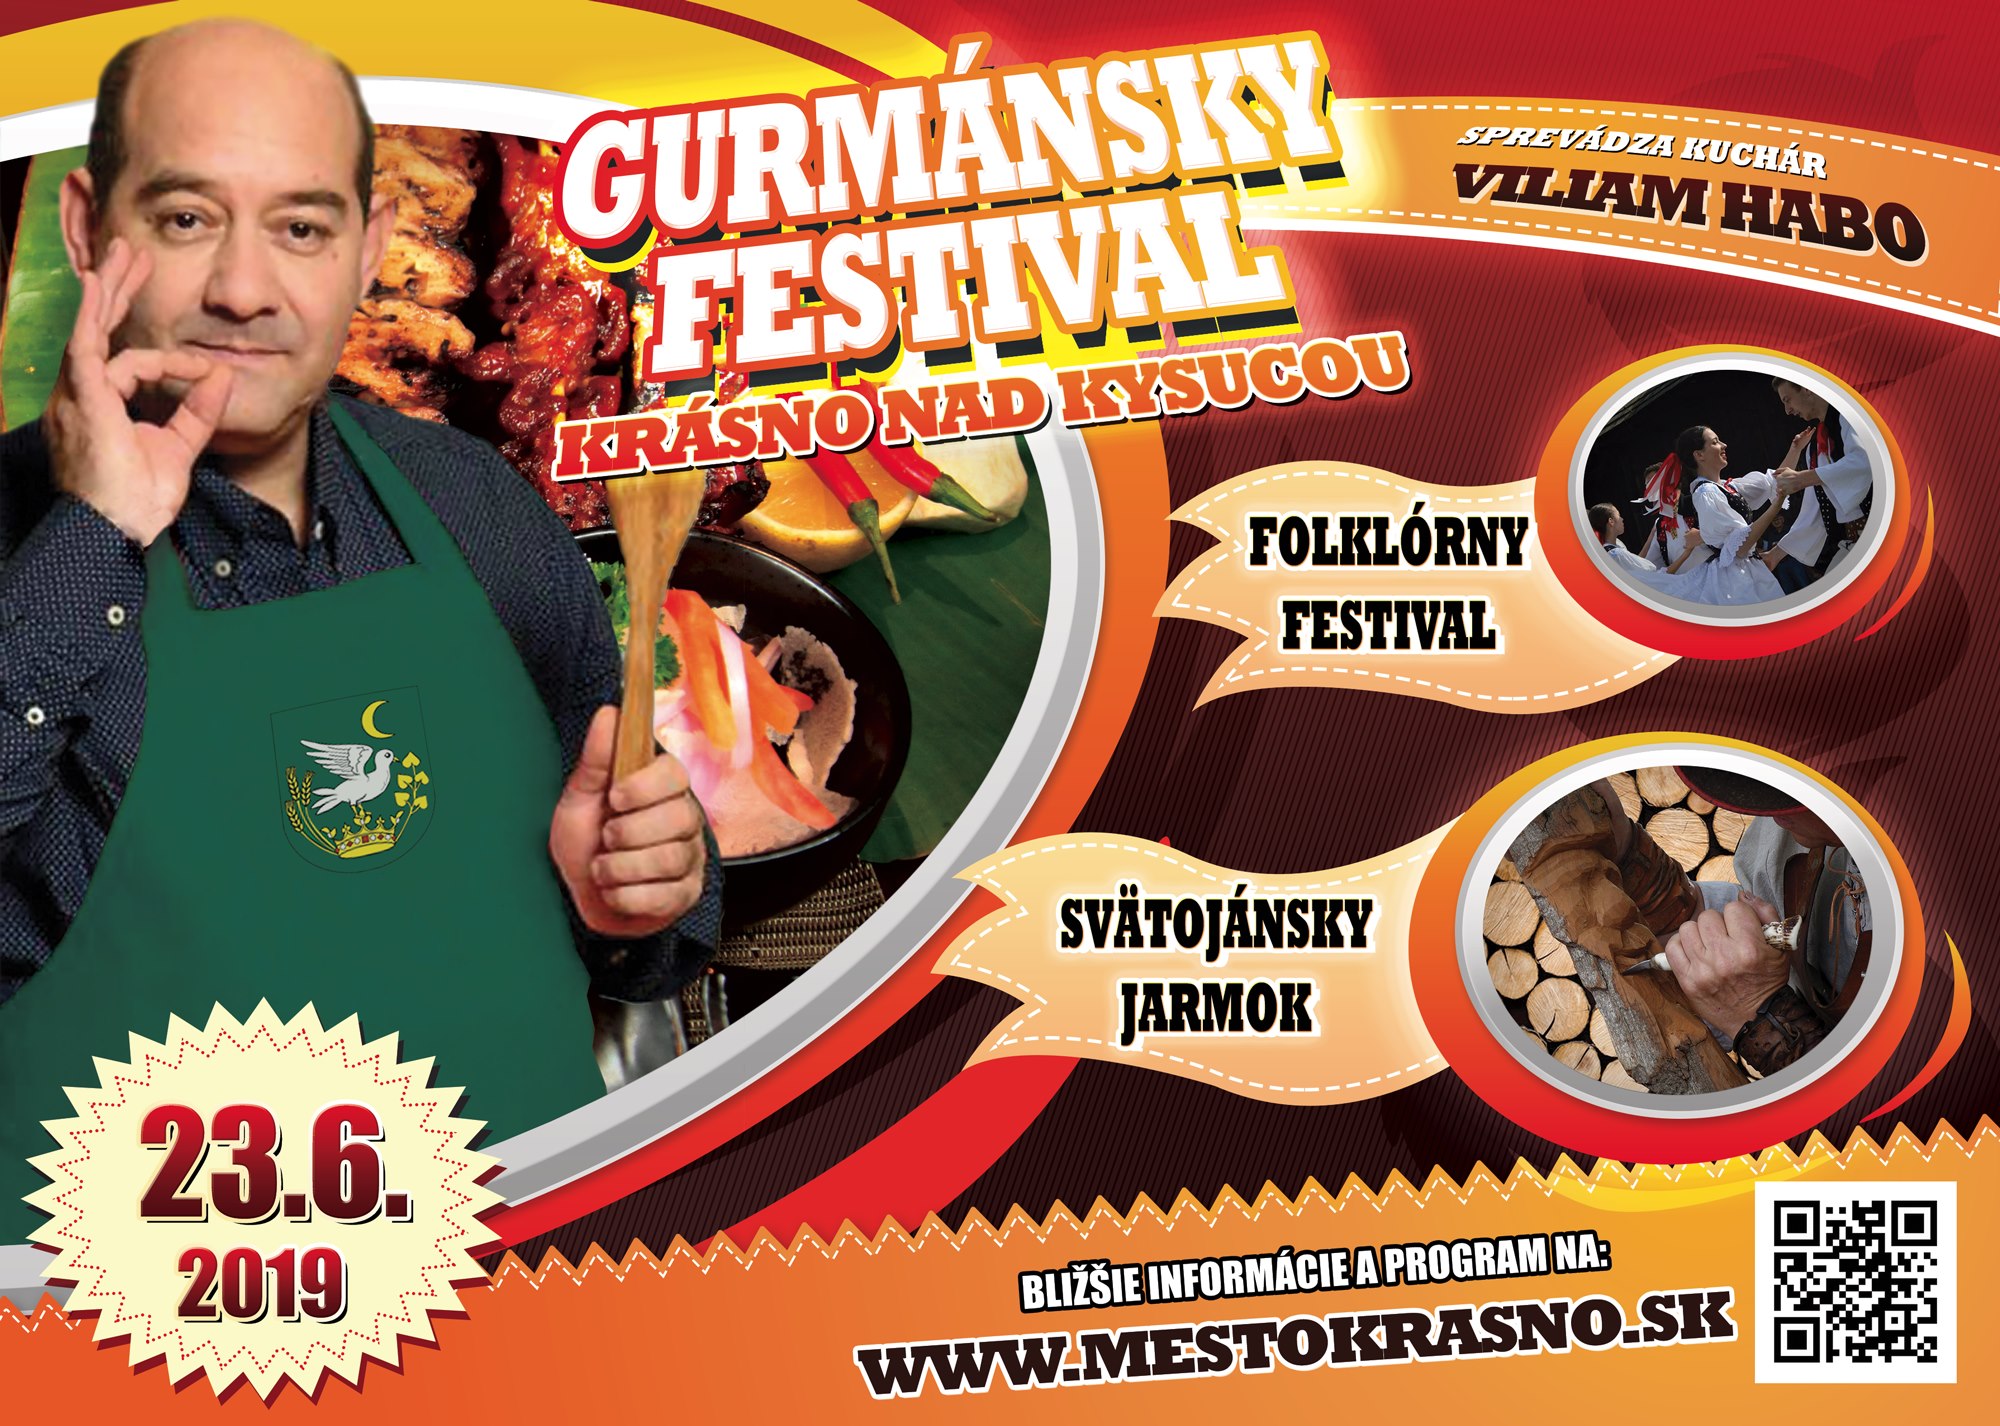 Gurmnsky festival  Krsno nad Kysucou 2019 -1. ronk a 9. ronk Svtojnskeho jarmoku a  4. ronk Folklrneho festivalu